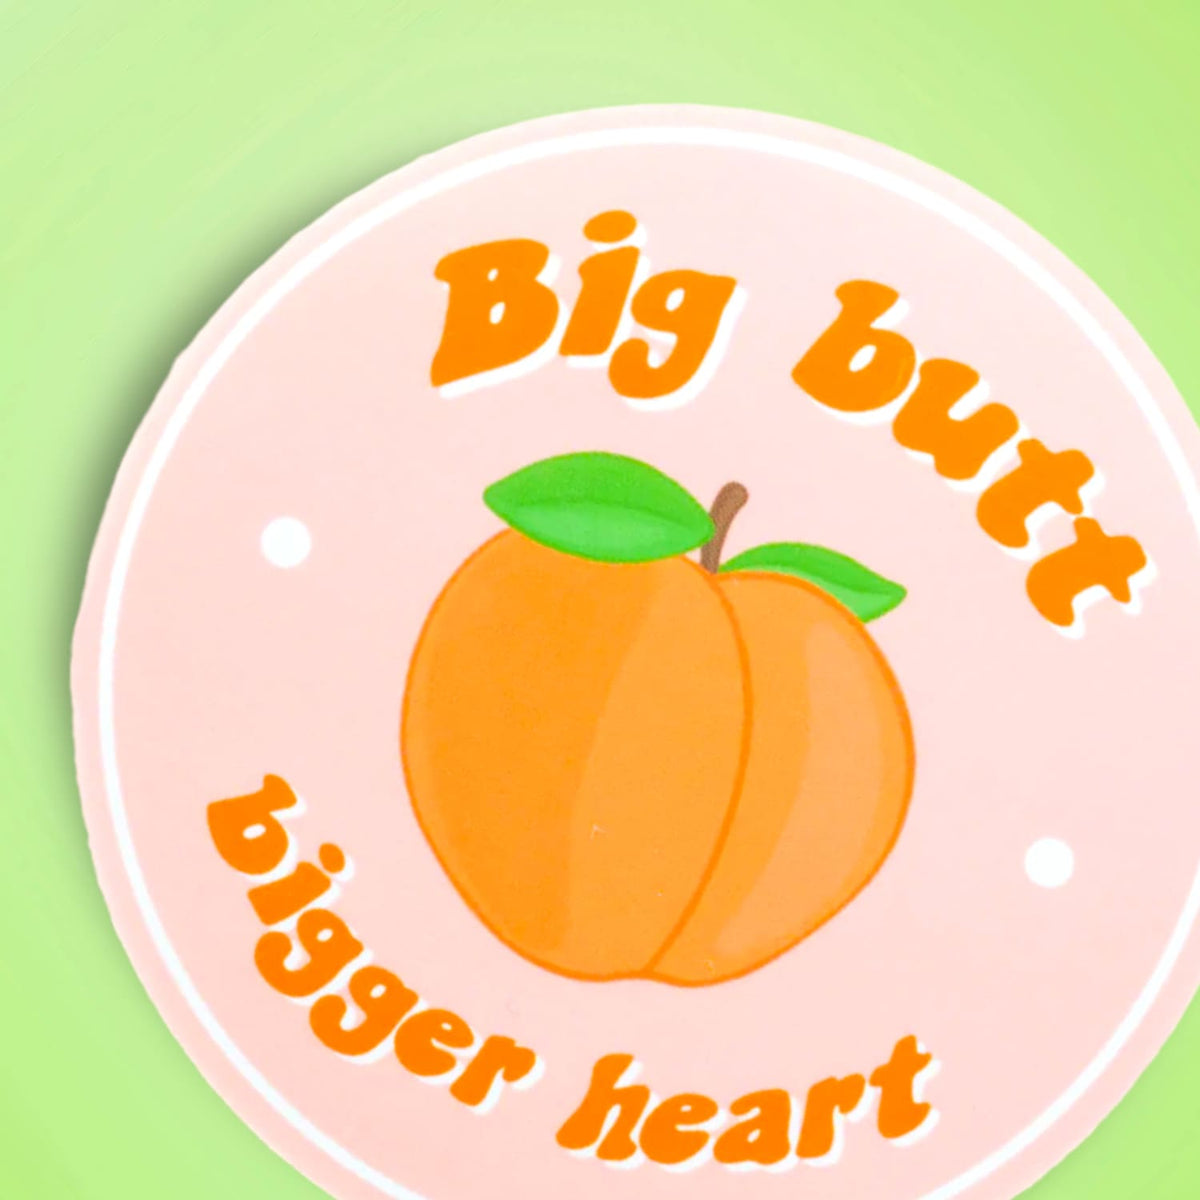 Sticker Pmp Big Butt Butts - Cute - Lolgp - Peach - Runner